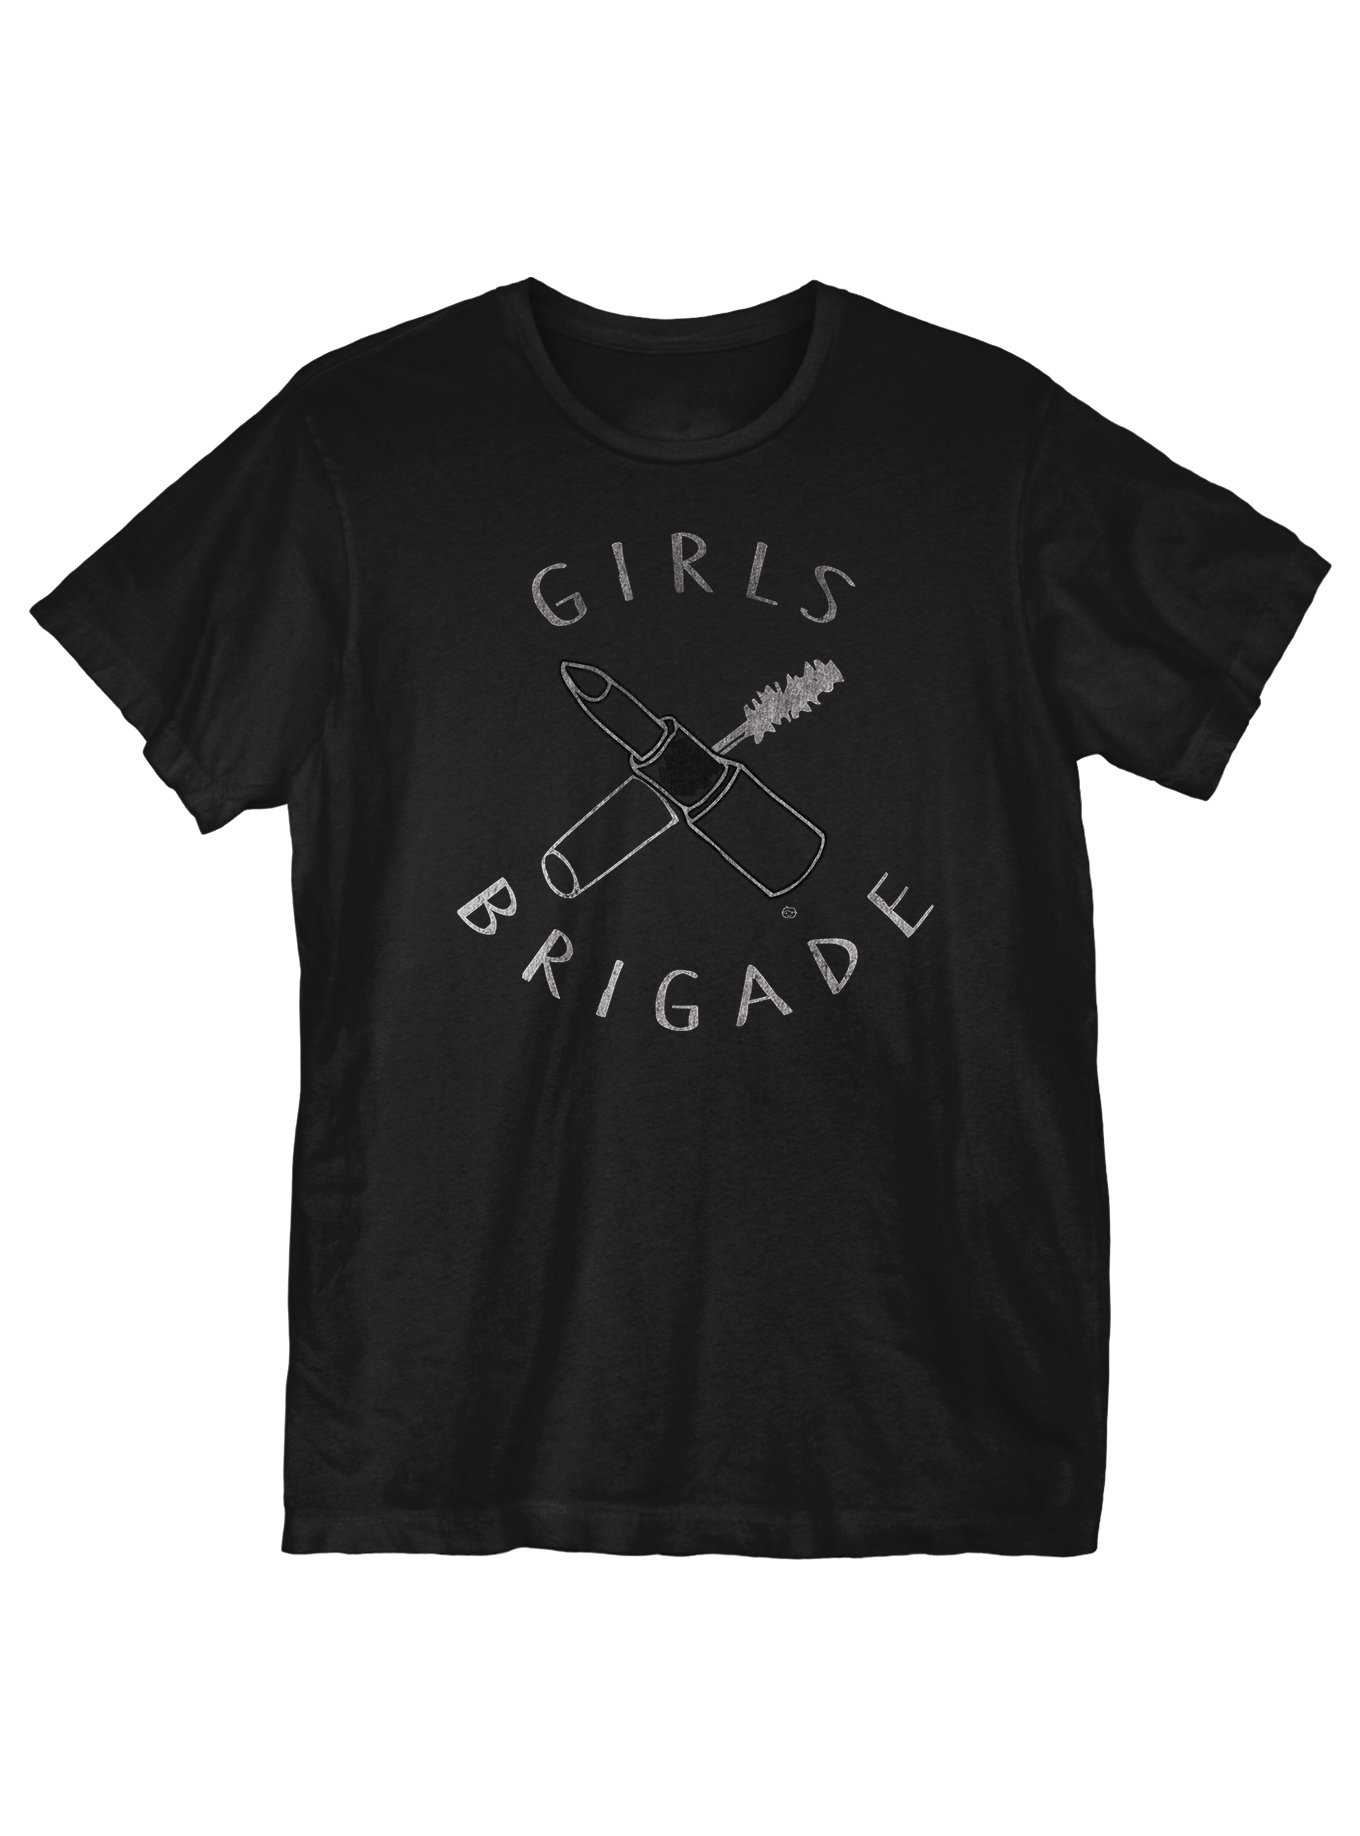 Girls Brigade T-Shirt, , hi-res